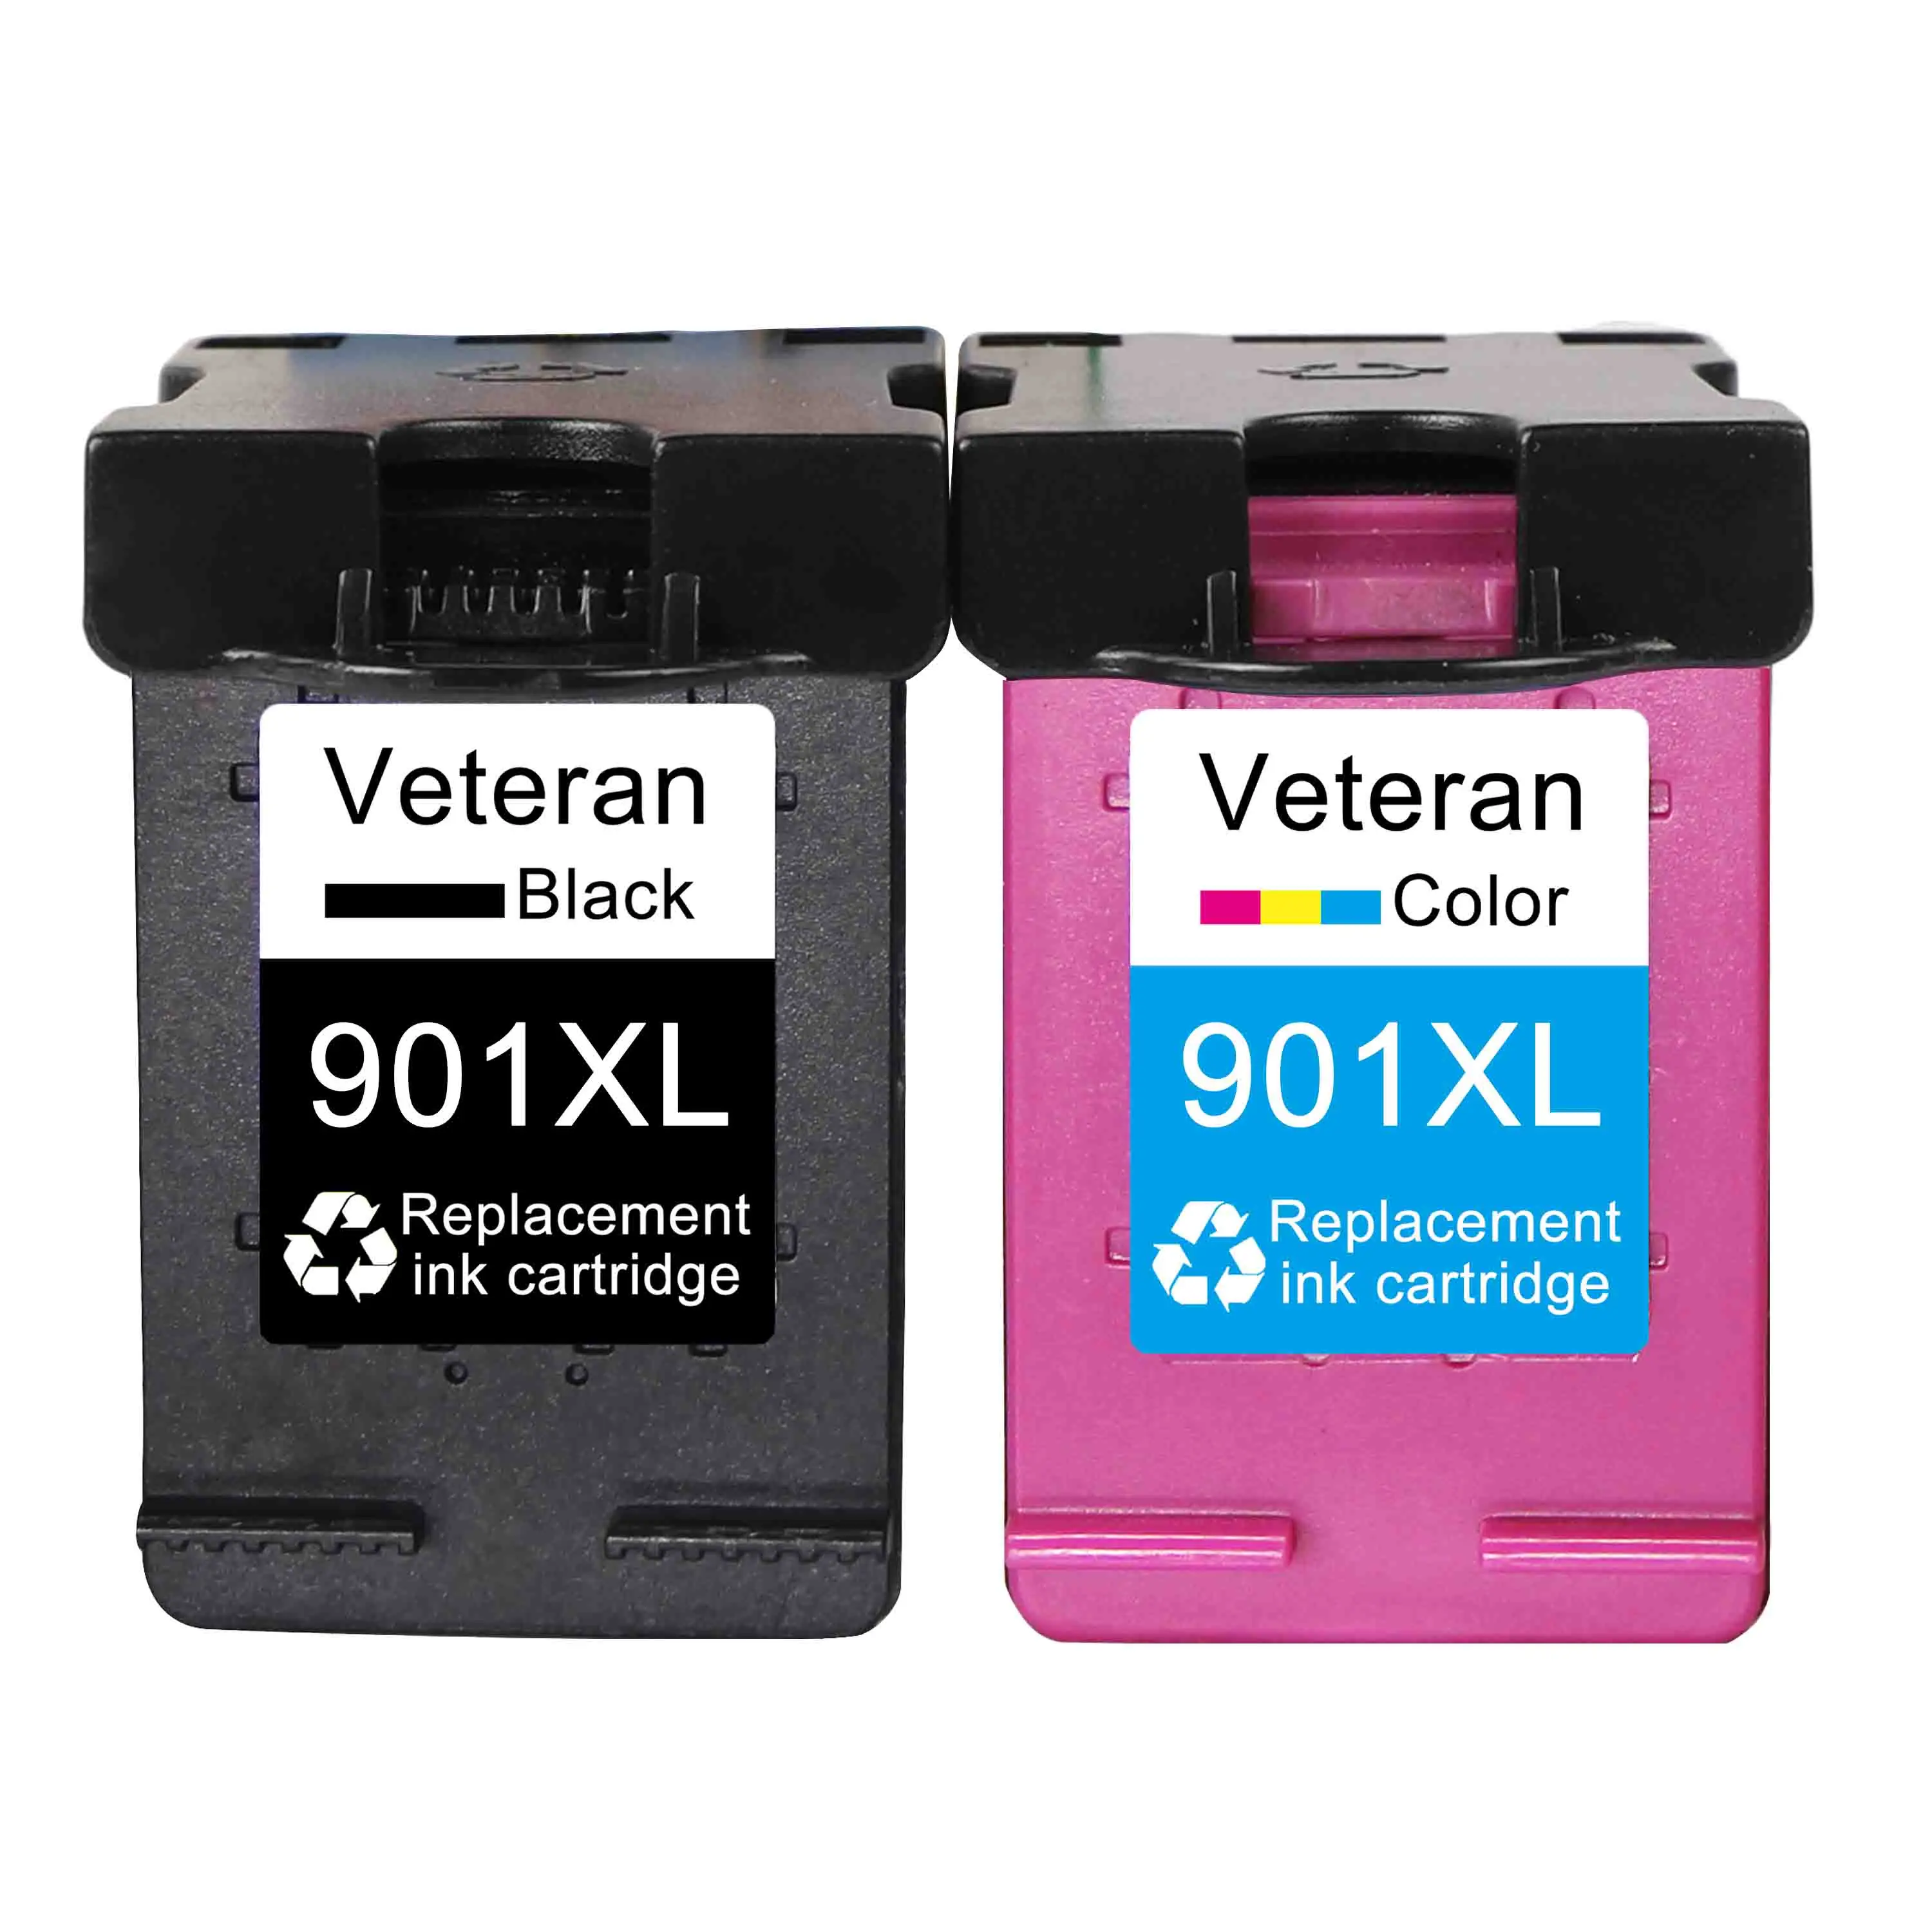 Ветеран 901XL Картридж совместимый для hp 901 xl hp 901 чернильный картридж для принтера Officejet 4500 J4500 J4540 J4550 J4580 J4680 - Цвет: 901XL BK and Color